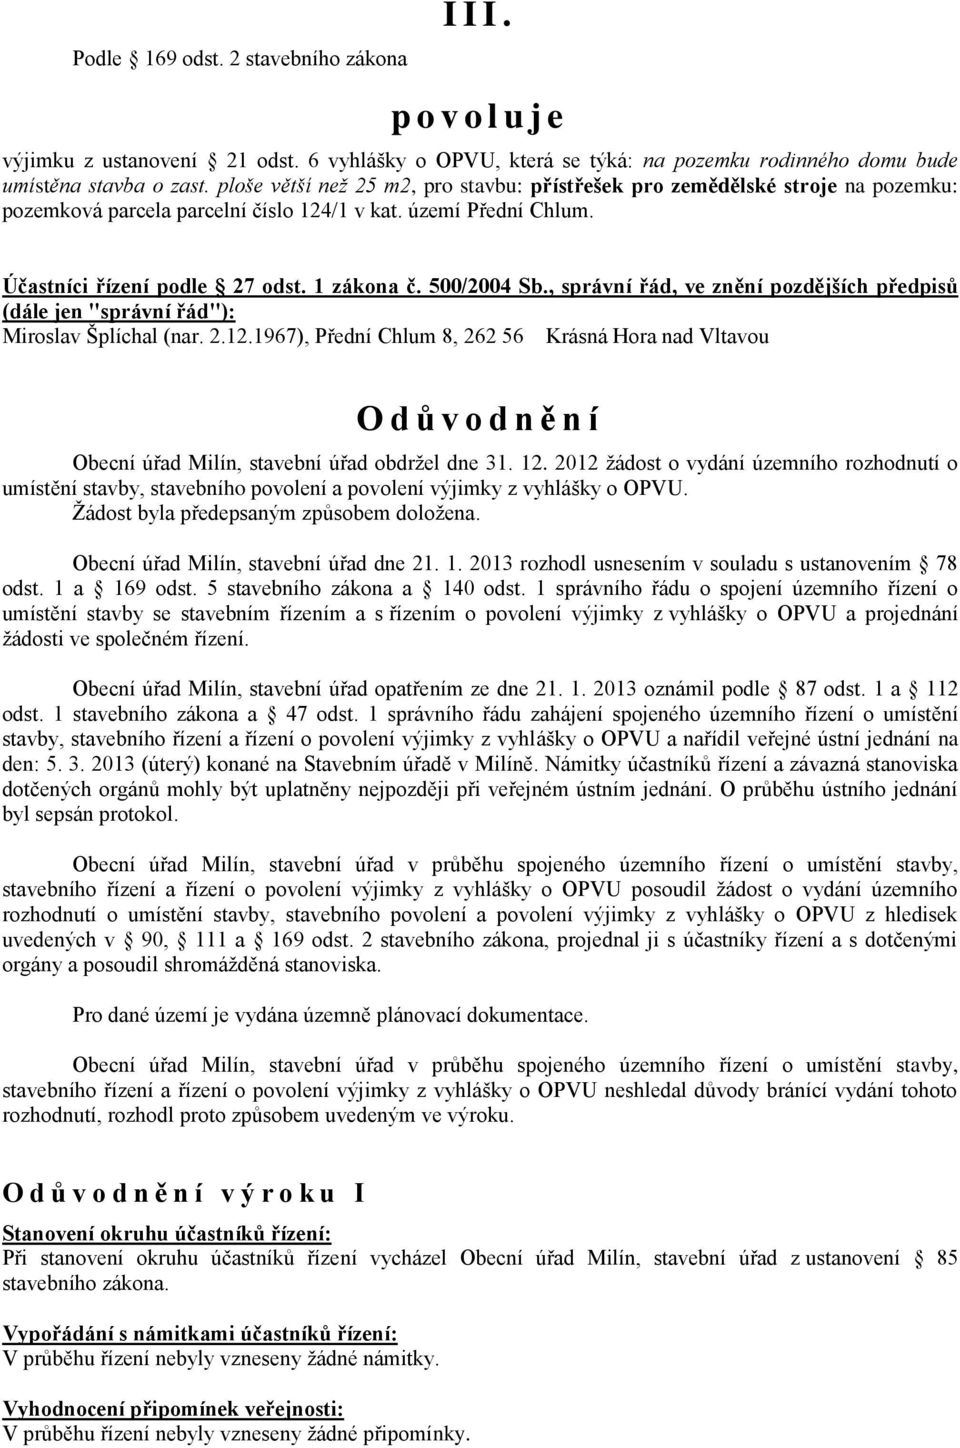 500/2004 Sb., správní řád, ve znění pozdějších předpisů (dále jen "správní řád"): Miroslav Šplíchal (nar. 2.12.